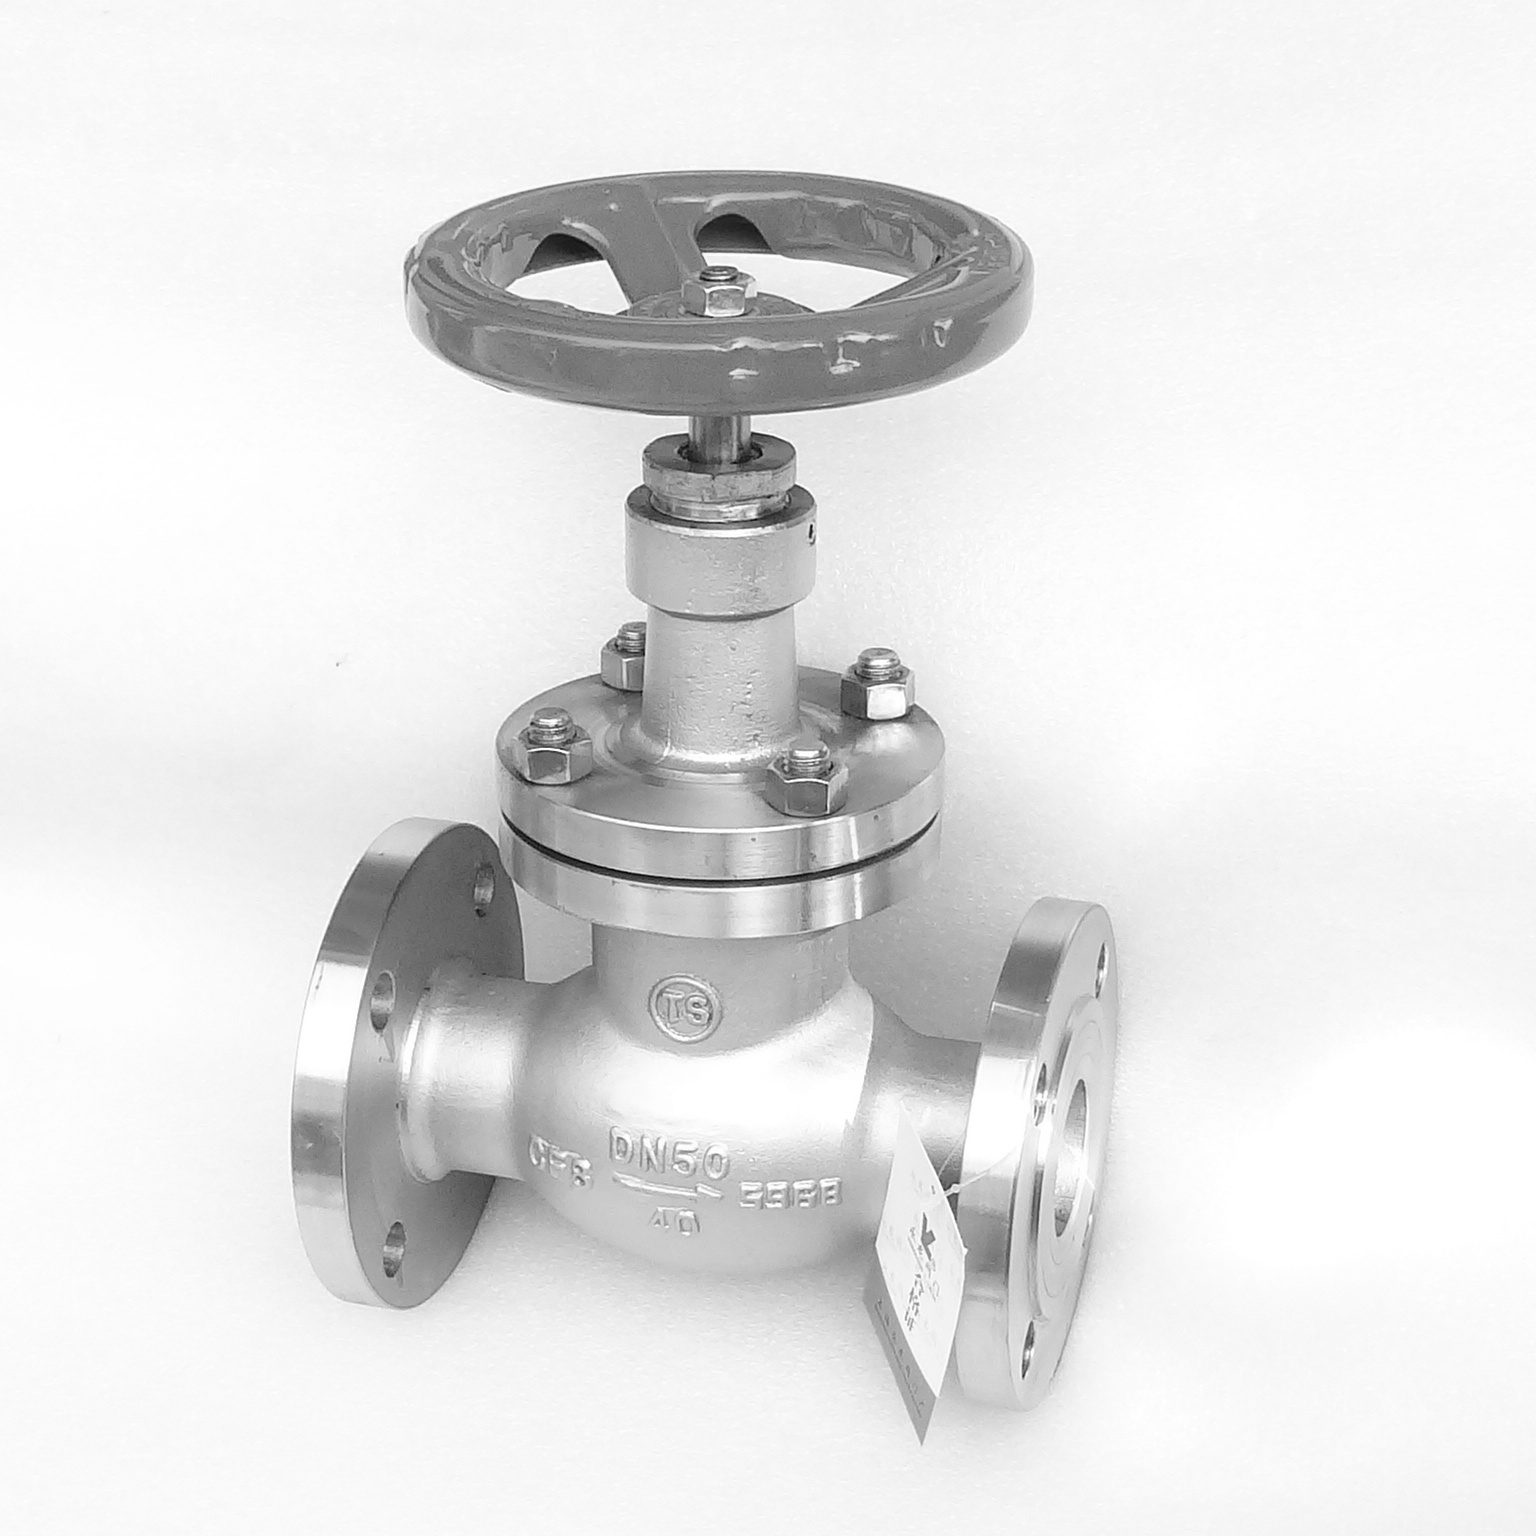  Stainless steel ammonia stop valve